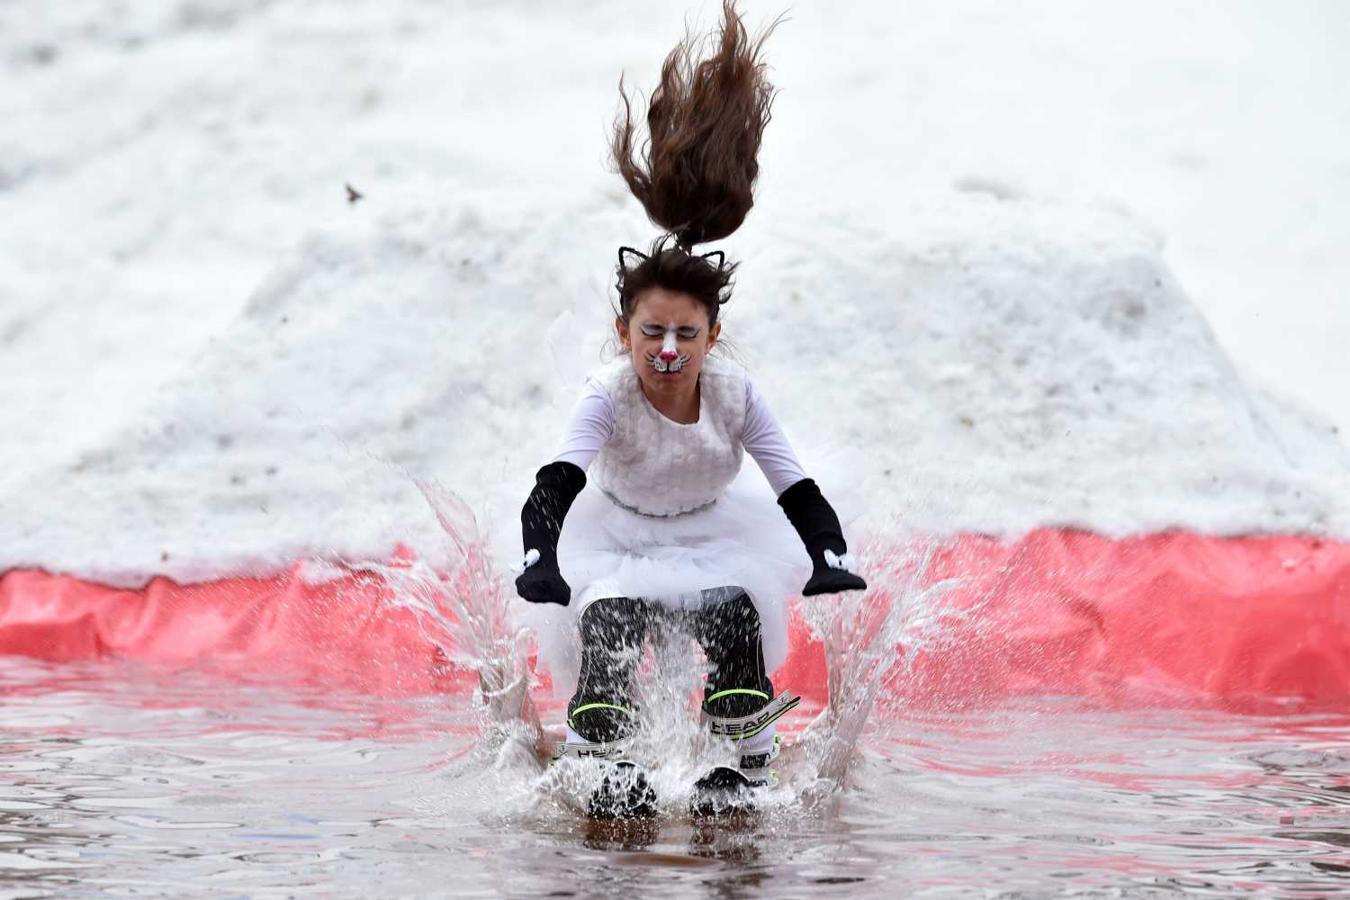 Vista de una de las participantes en el "Californication 9.0", competición humorística de descenso en esquís o snowboard, que se celebra en Minsk para festejar el fin del invierno